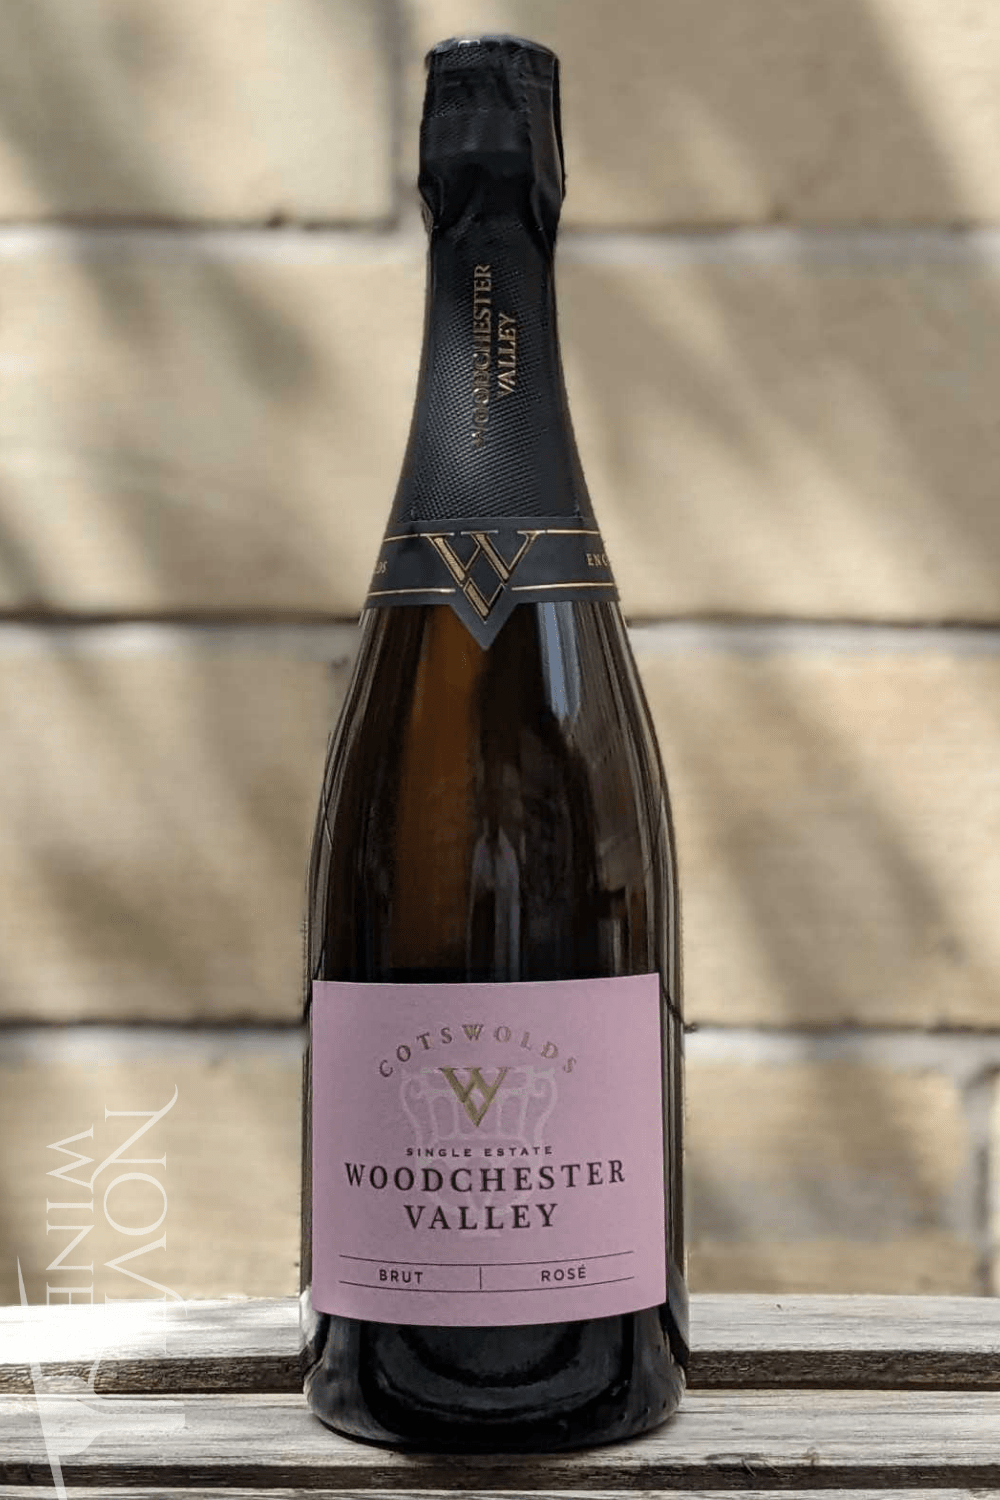 Woodchester Valley Vineyard Sparkling Wine Woodchester Valley Vineyard Rosé Brut 2019, England